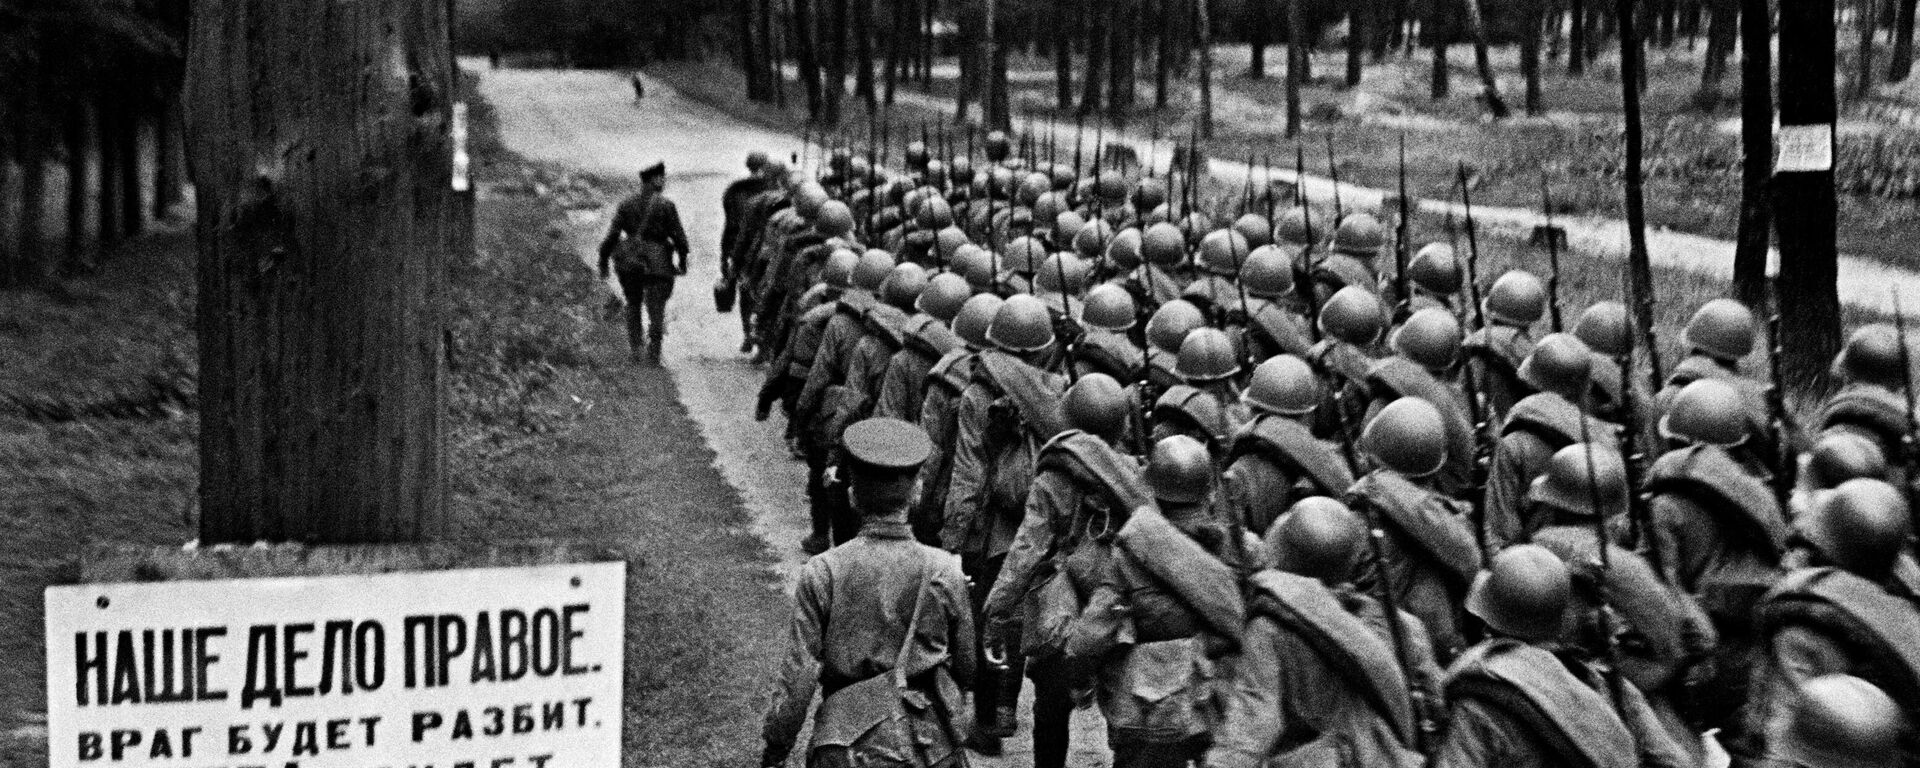 Колонны бойцов движутся на фронт. Москва, 23 июня 1941 года - Sputnik Lietuva, 1920, 22.06.2021